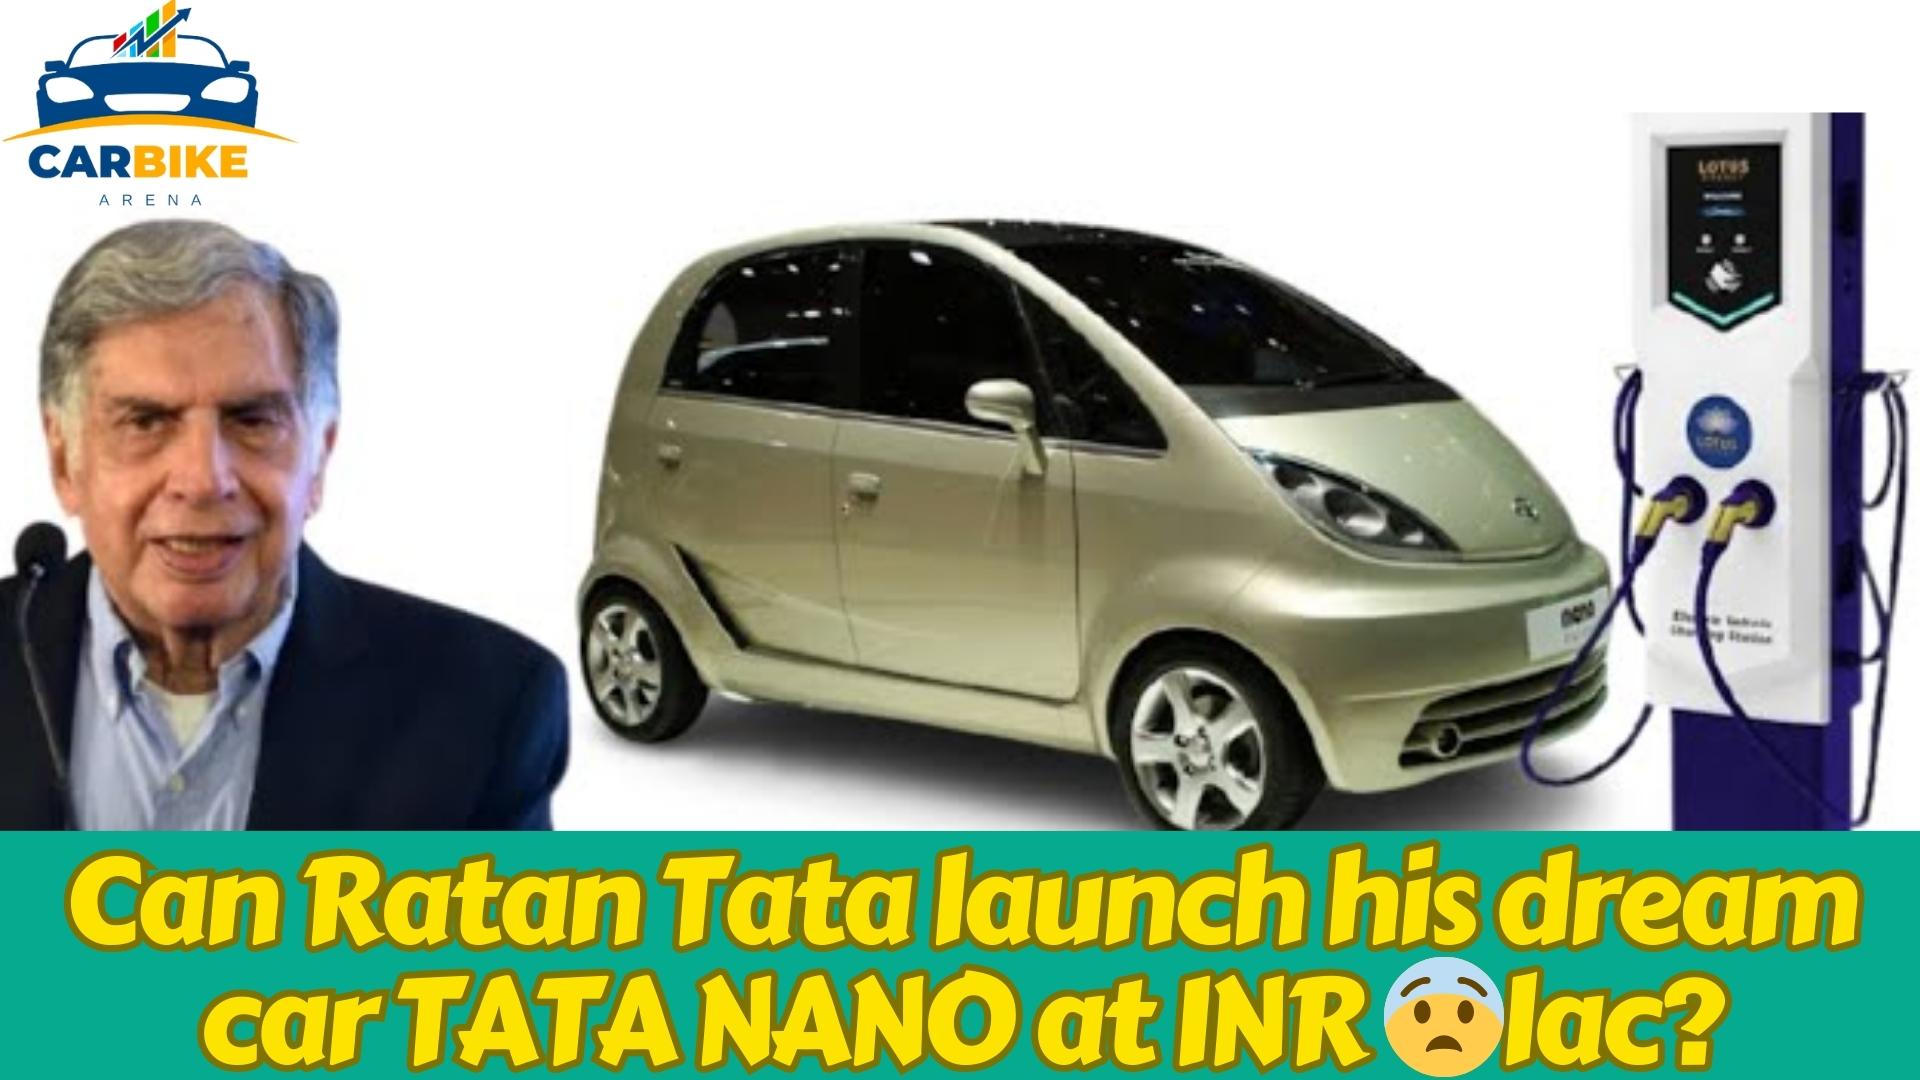 Can Ratan Tata launch his dream car TATA NANO at INR 1lac?